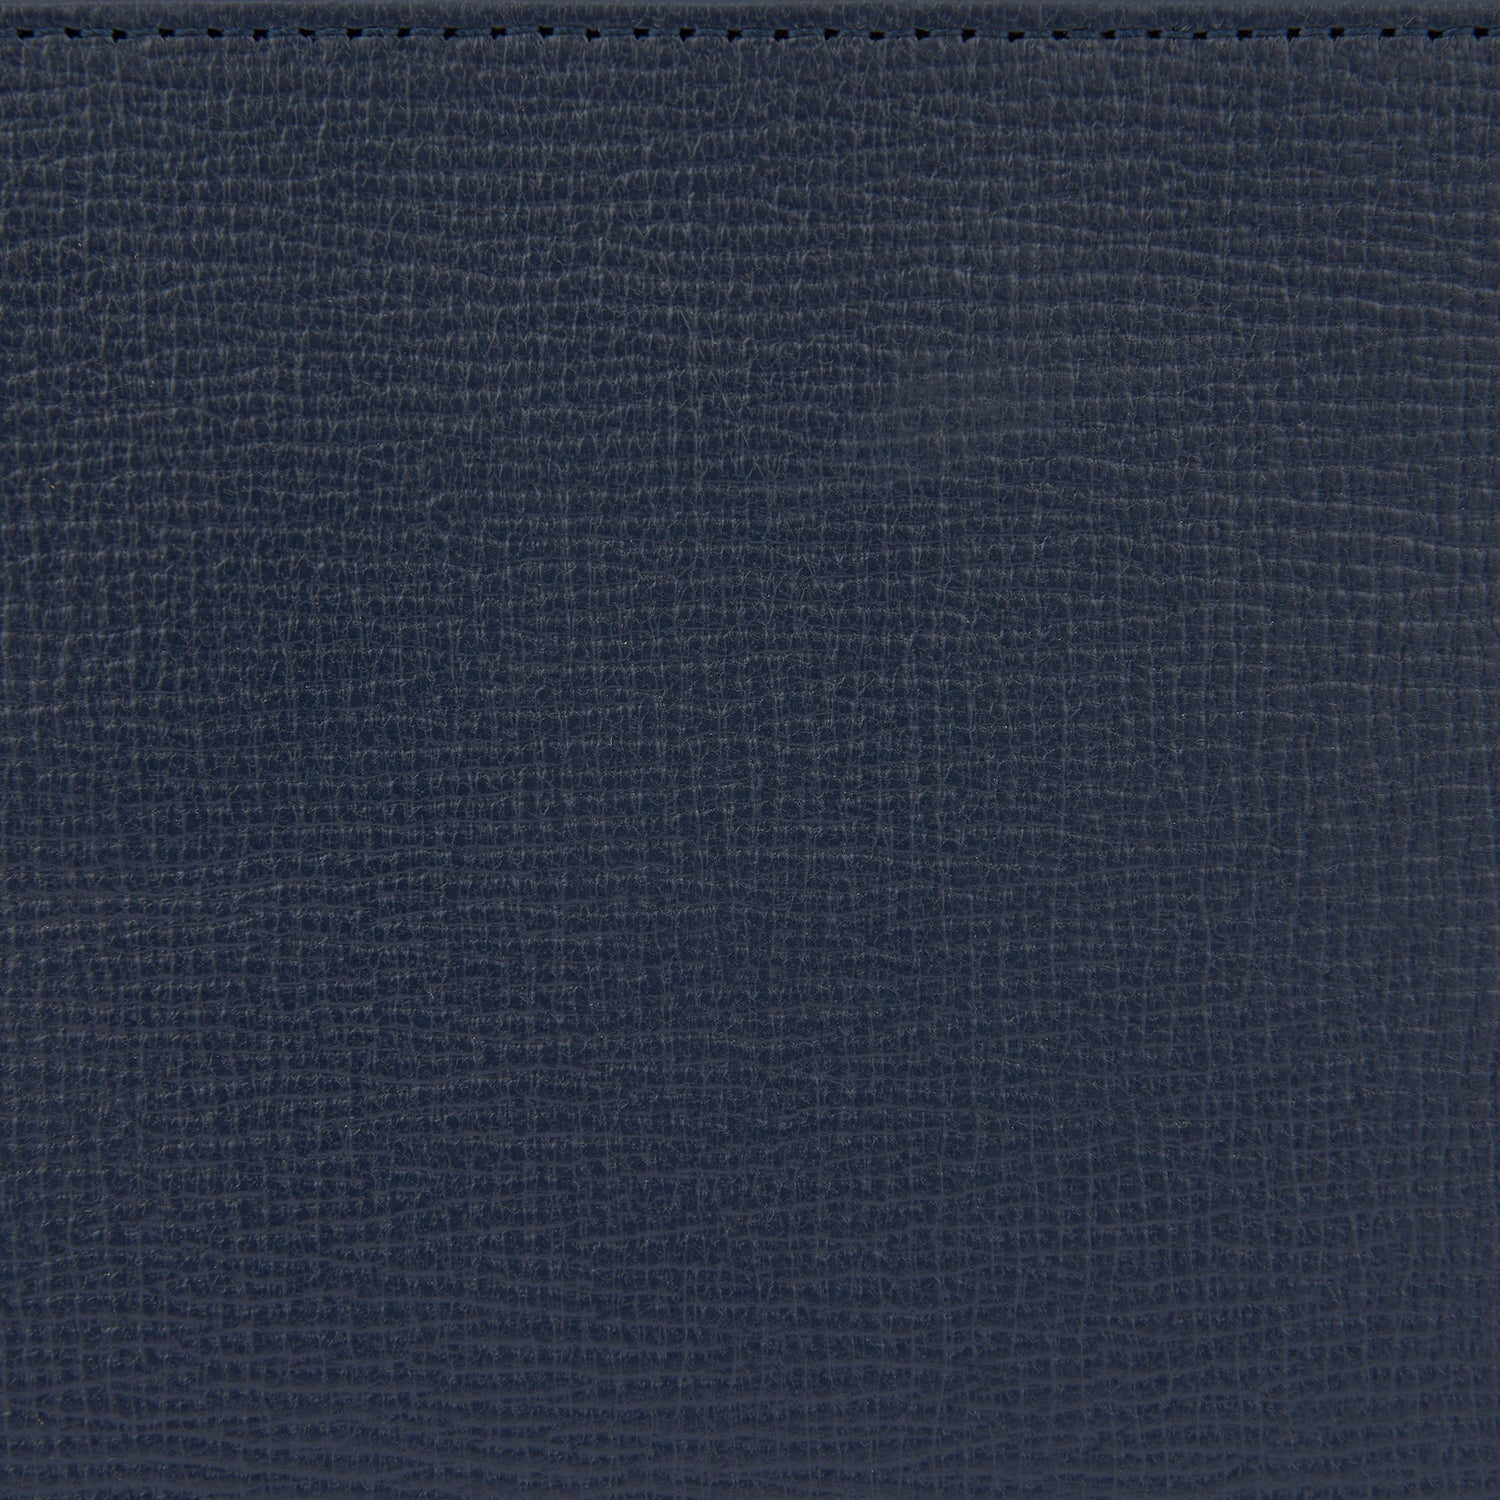 Bespoke XL Loose Pocket -

                  
                    Capra Leather in Marine -
                  

                  Anya Hindmarch EU
